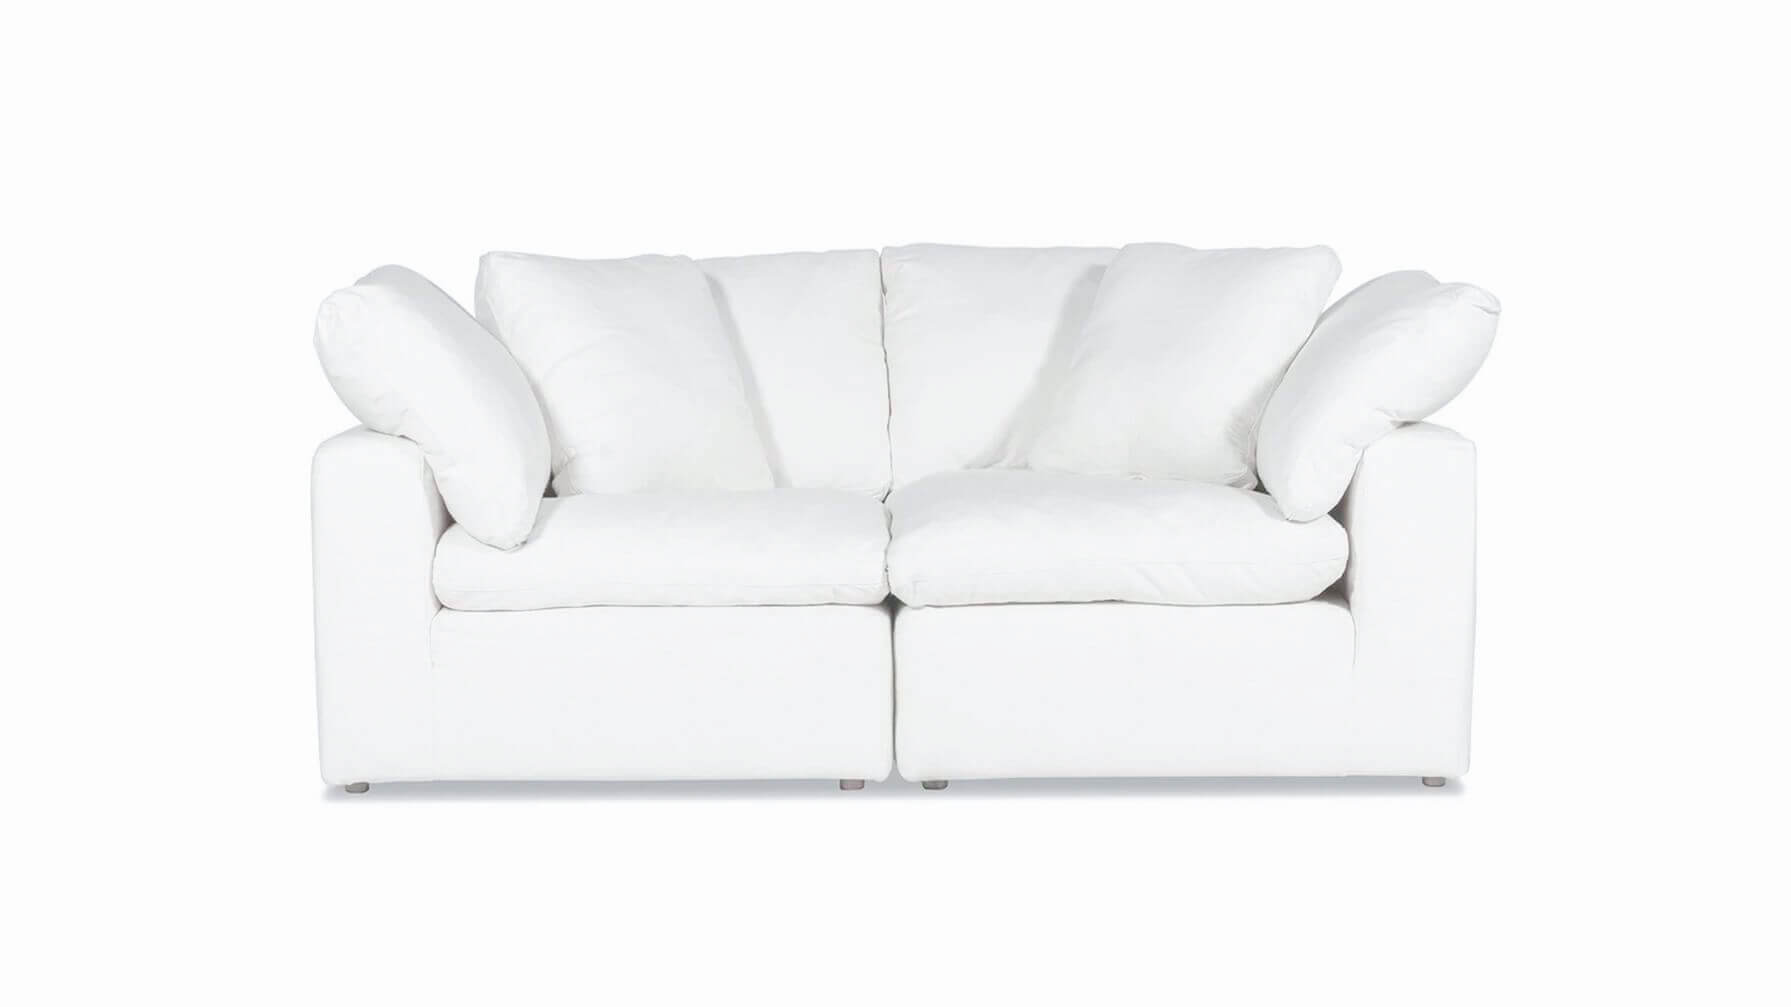 Movie Night™ 2-Piece Modular Sofa, Standard, Brie - Image 1